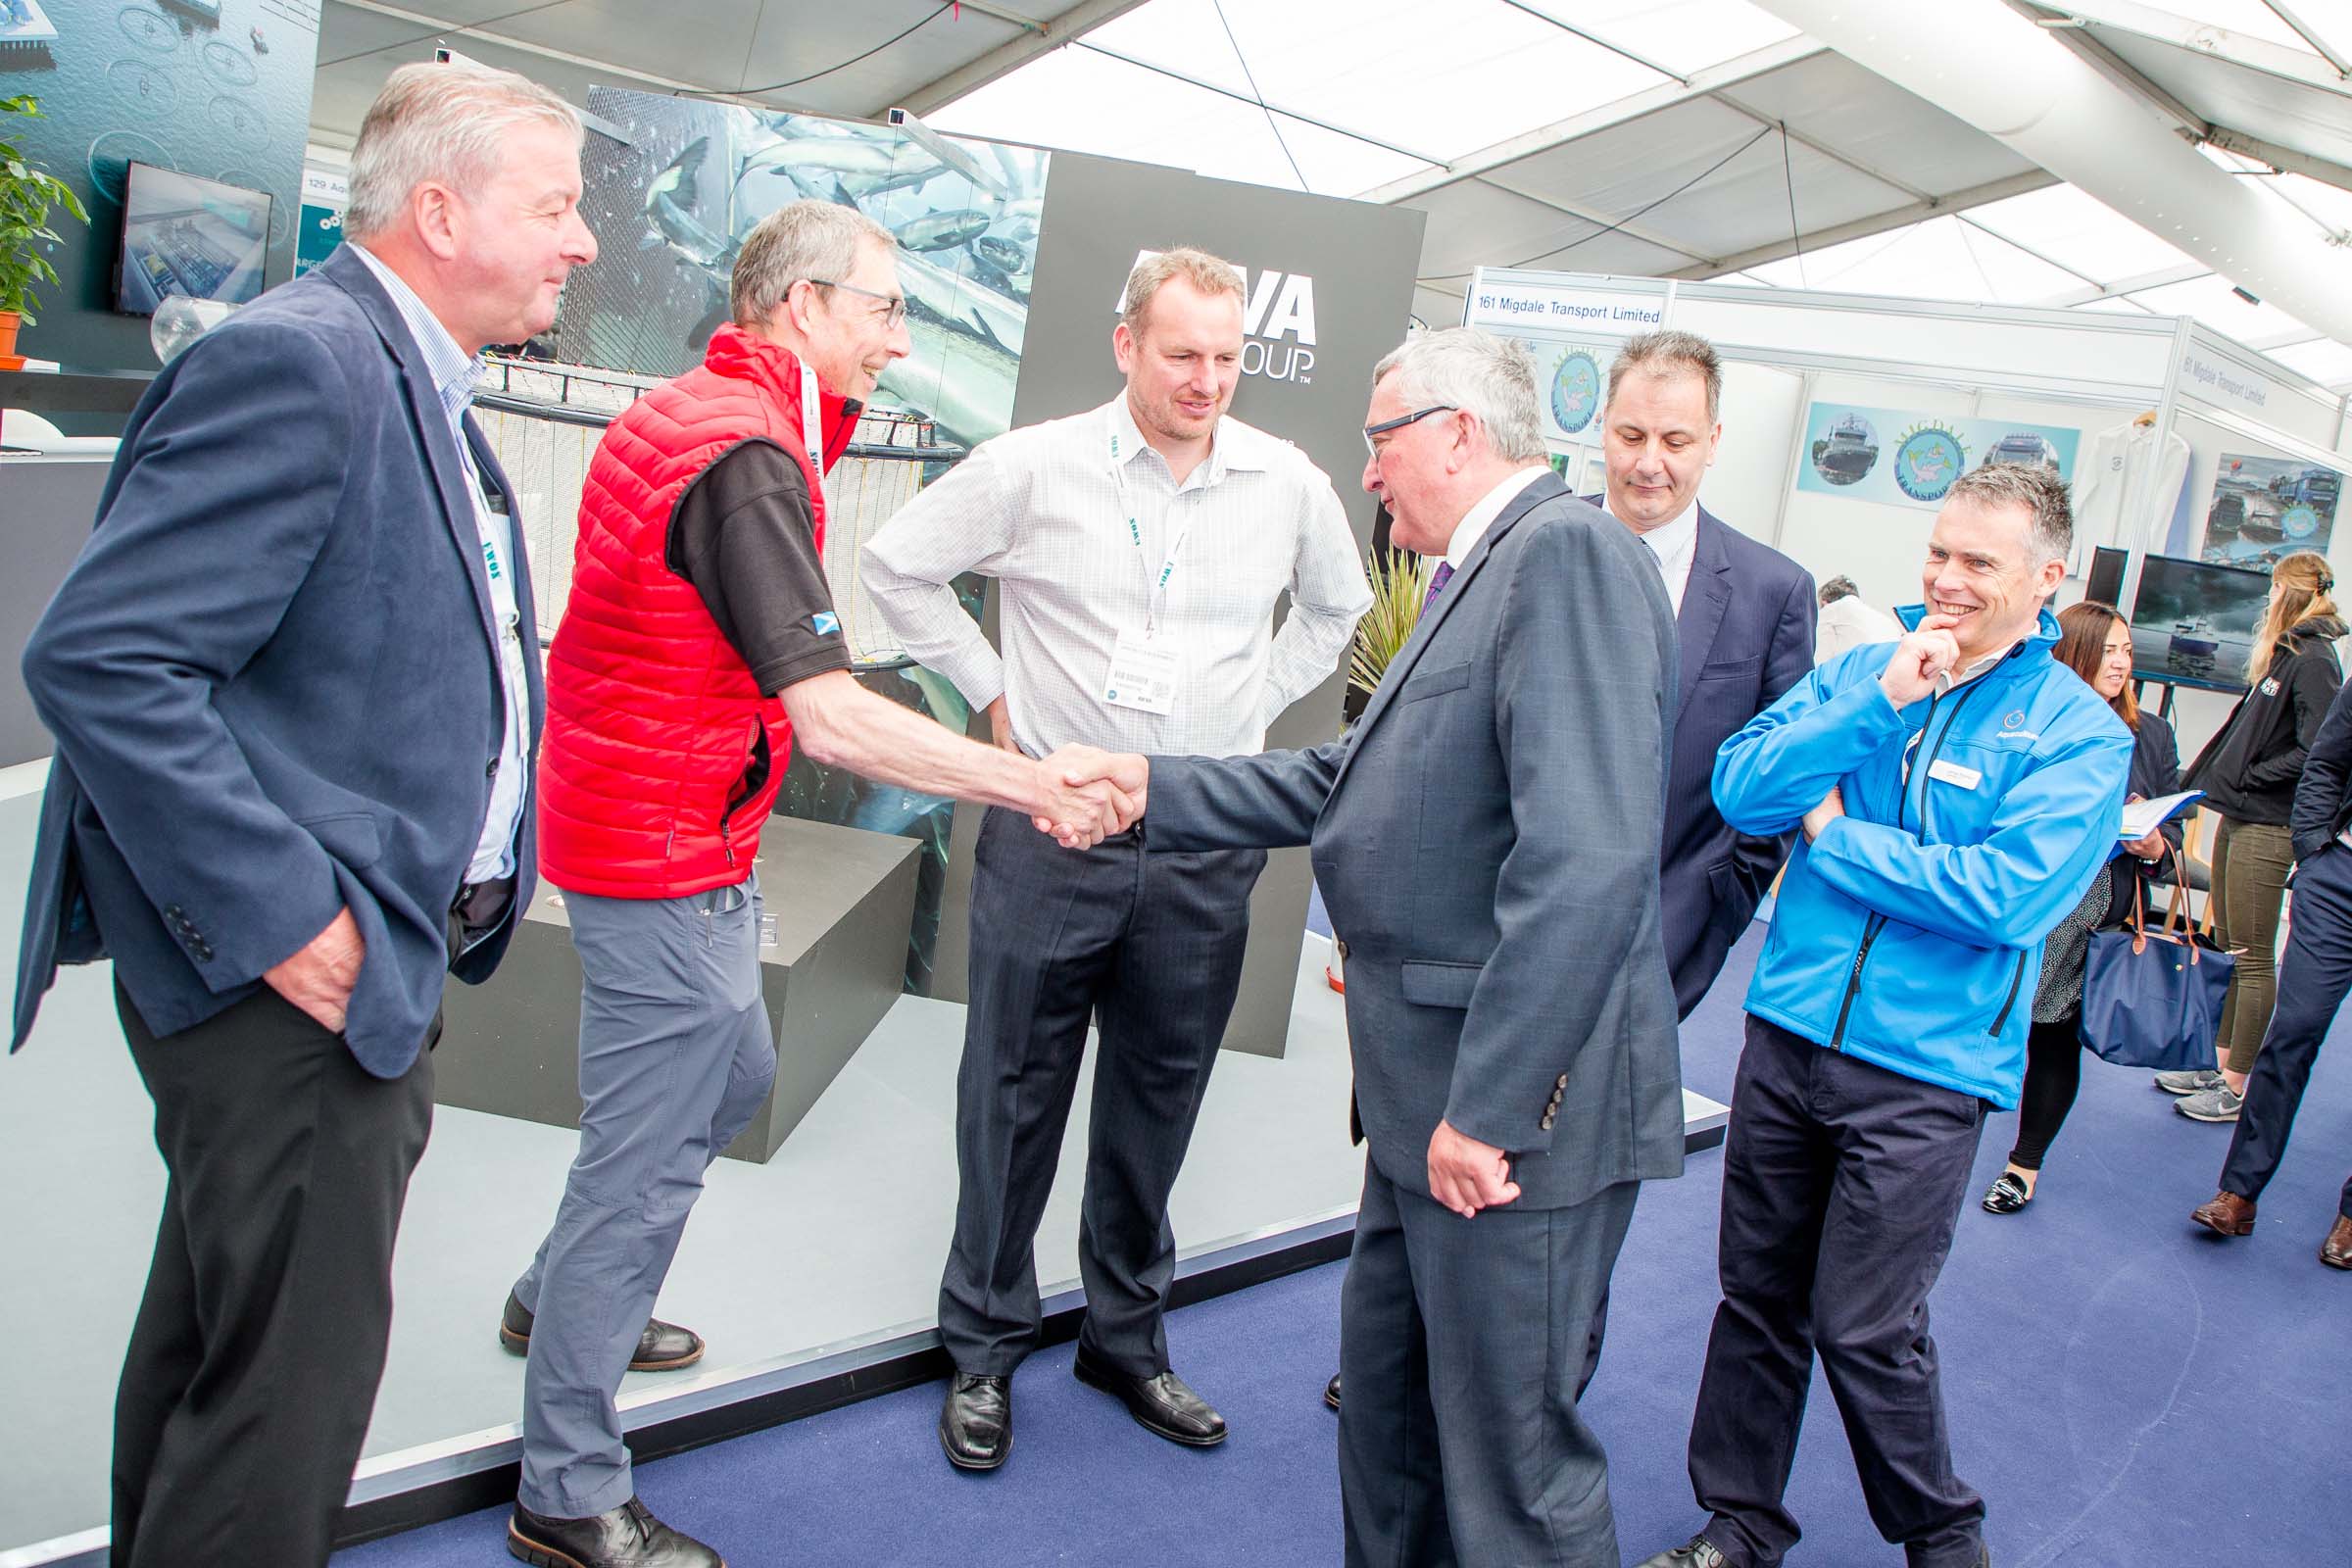 Scotland's rural economy minister Fergus Ewing tours Aquaculture UK 2018 in Aviemore